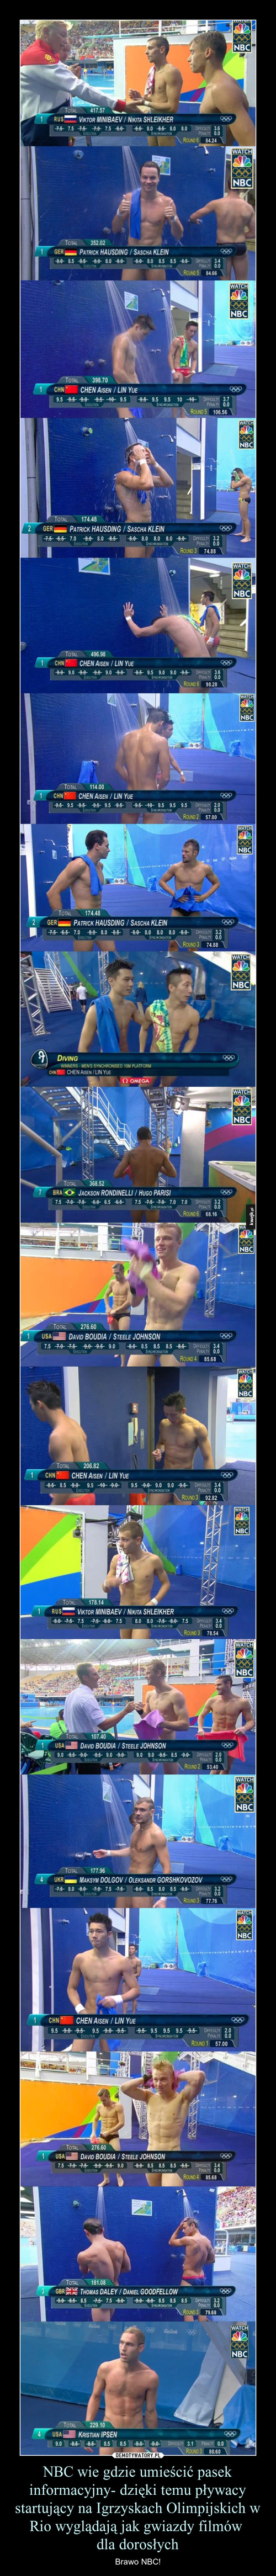 NBC wie gdzie umieścić pasek informacyjny- dzięki temu pływacy startujący na Igrzyskach Olimpijskich w Rio wyglądają jak gwiazdy filmów 
dla dorosłych